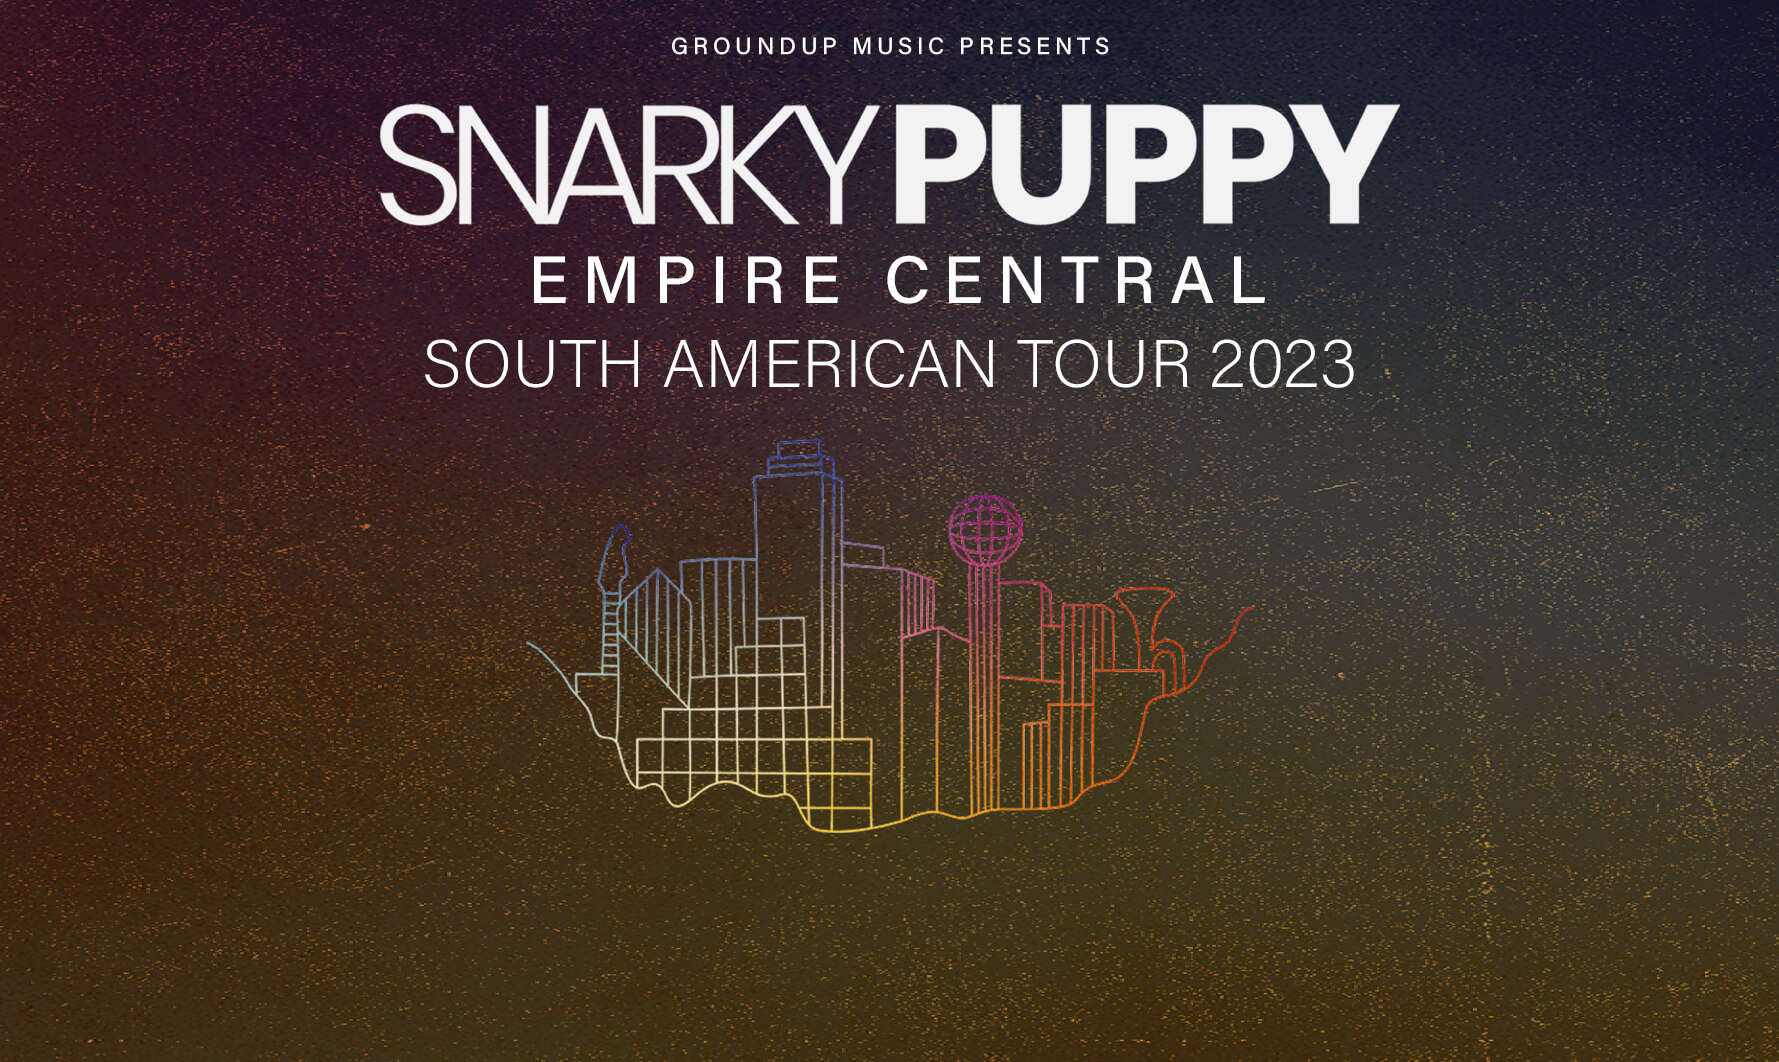 Snarky Puppy, Estados Unidos - 'Empire Central' - South American Tour 2023